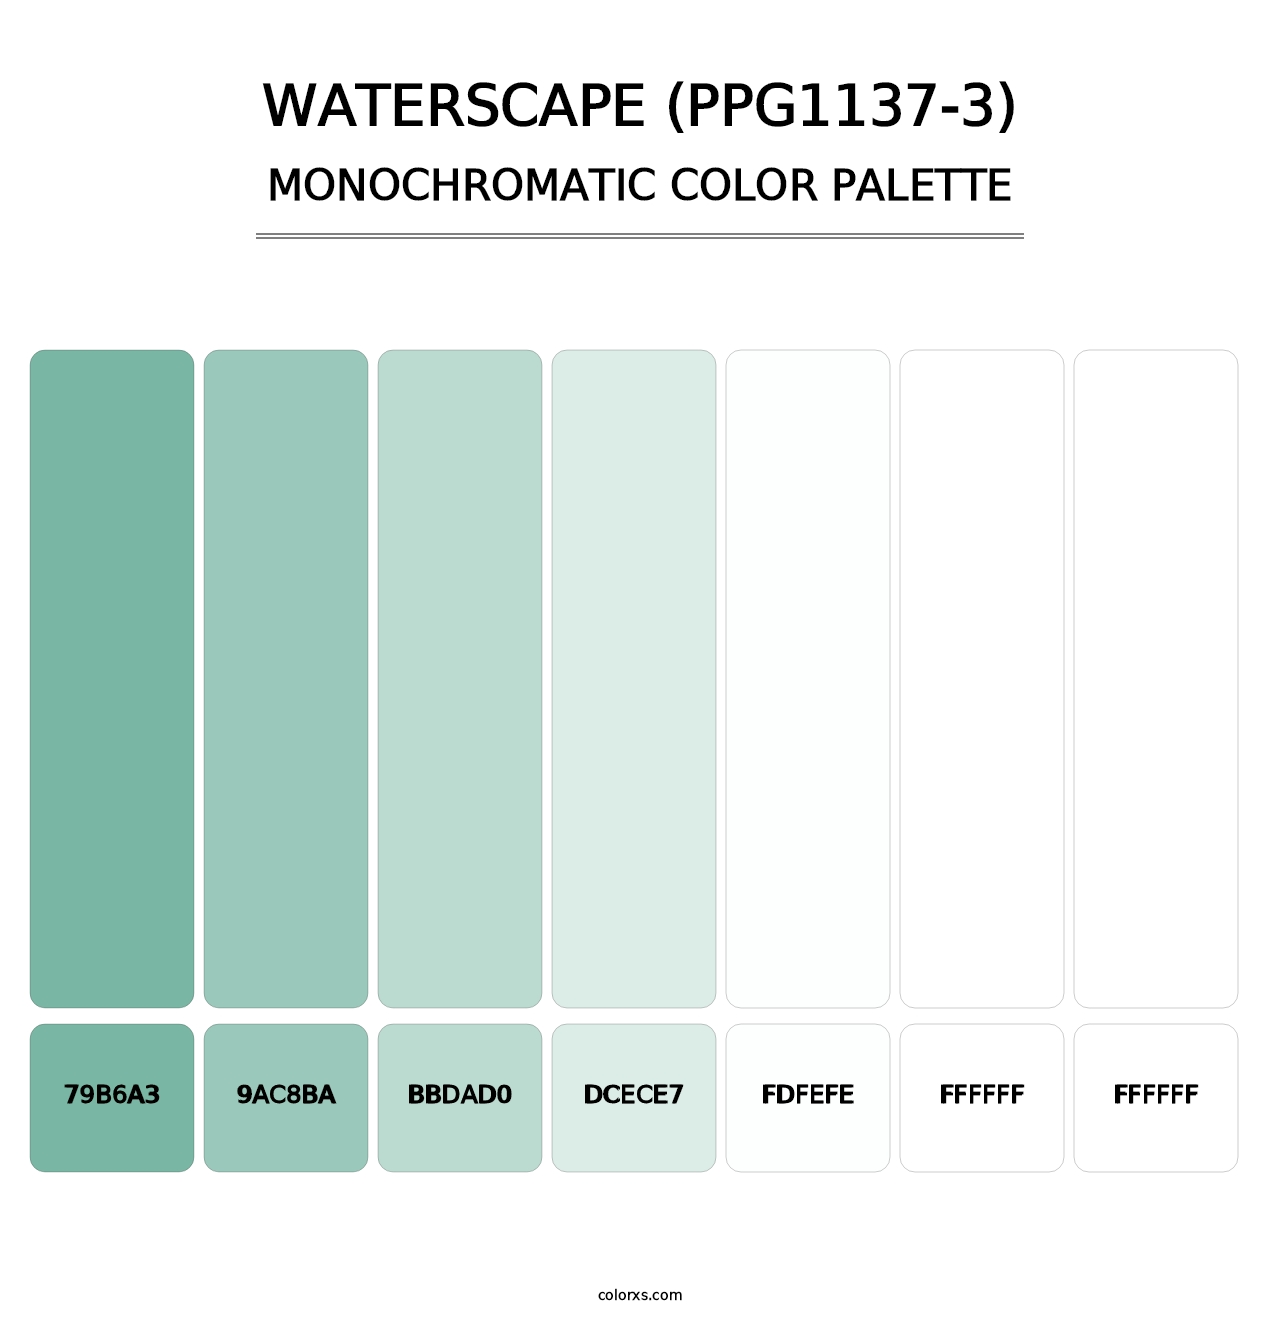 Waterscape (PPG1137-3) - Monochromatic Color Palette